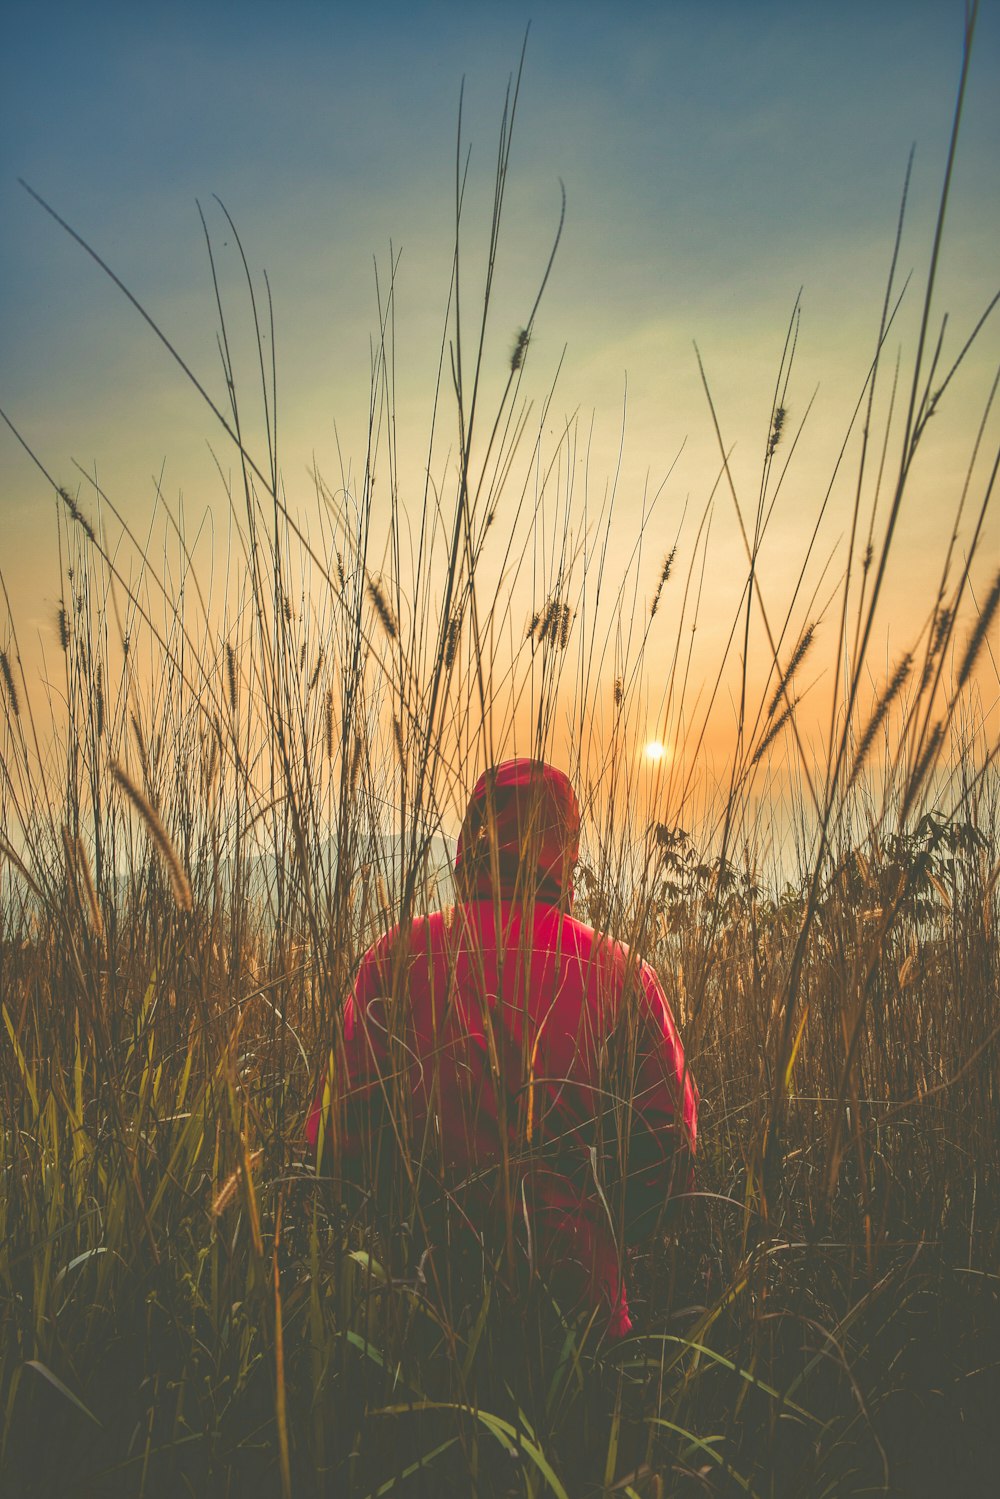 Persona in felpa con cappuccio rossa che cammina nel campo di erba